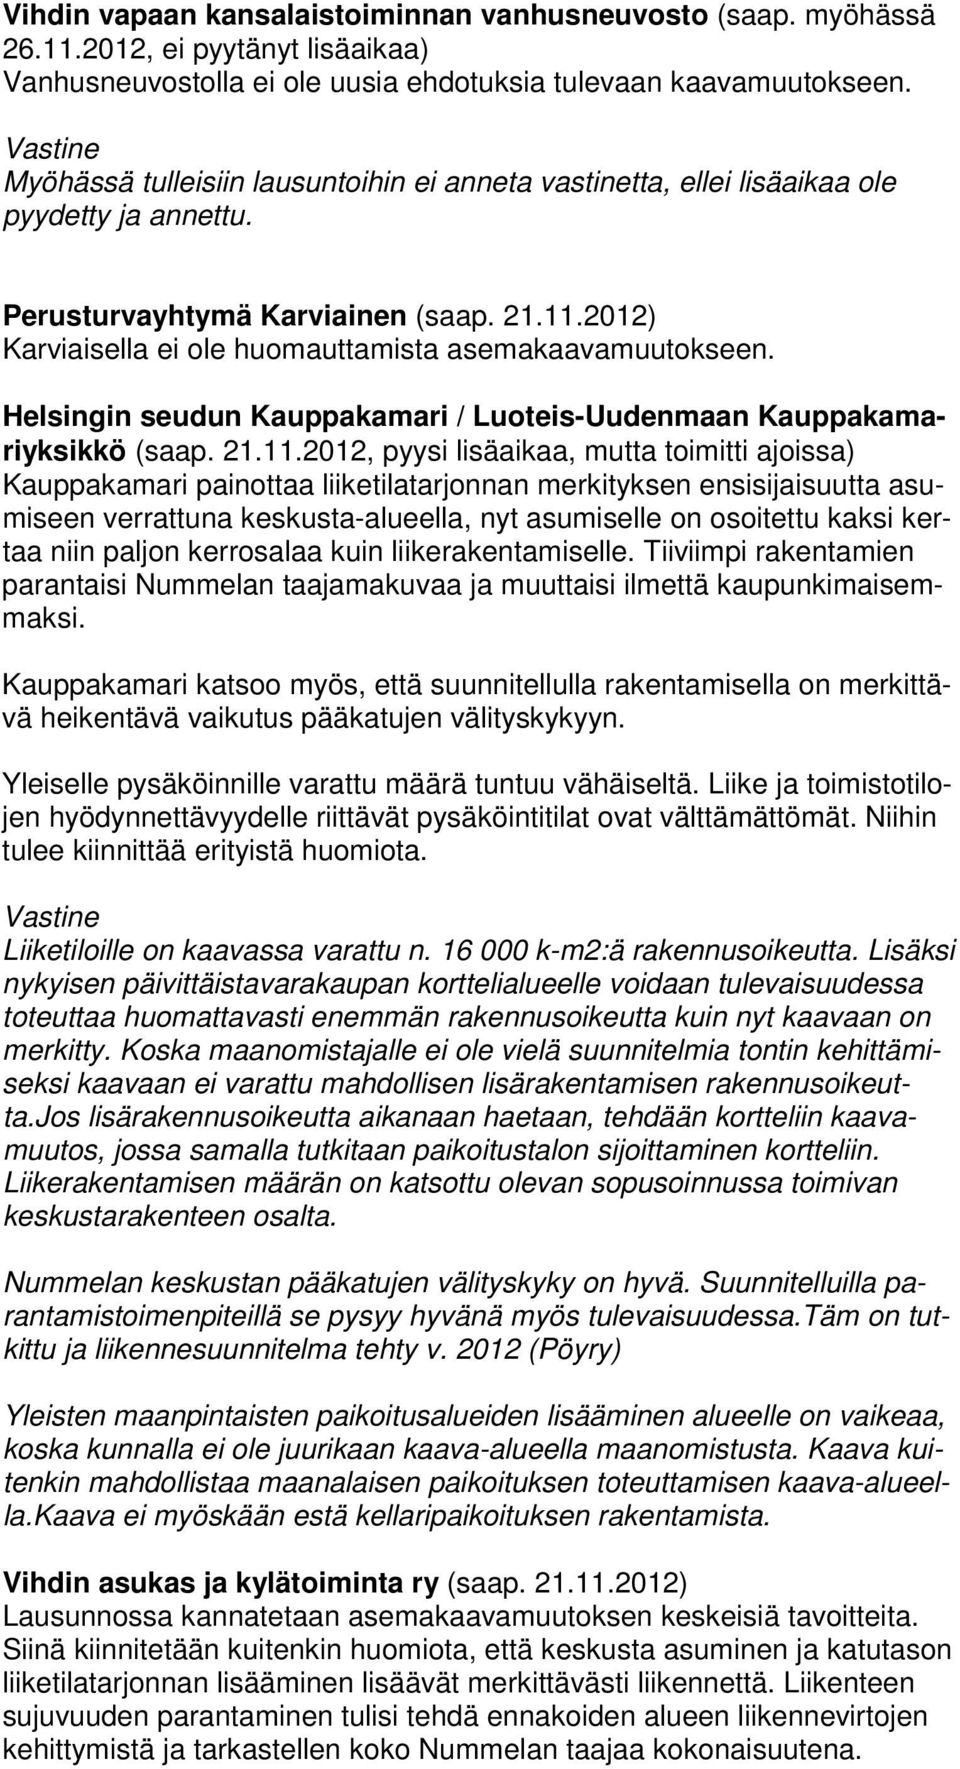 Helsingin seudun Kauppakamari / Luoteis-Uudenmaan Kauppakamari yksikkö (saap. 21.11.